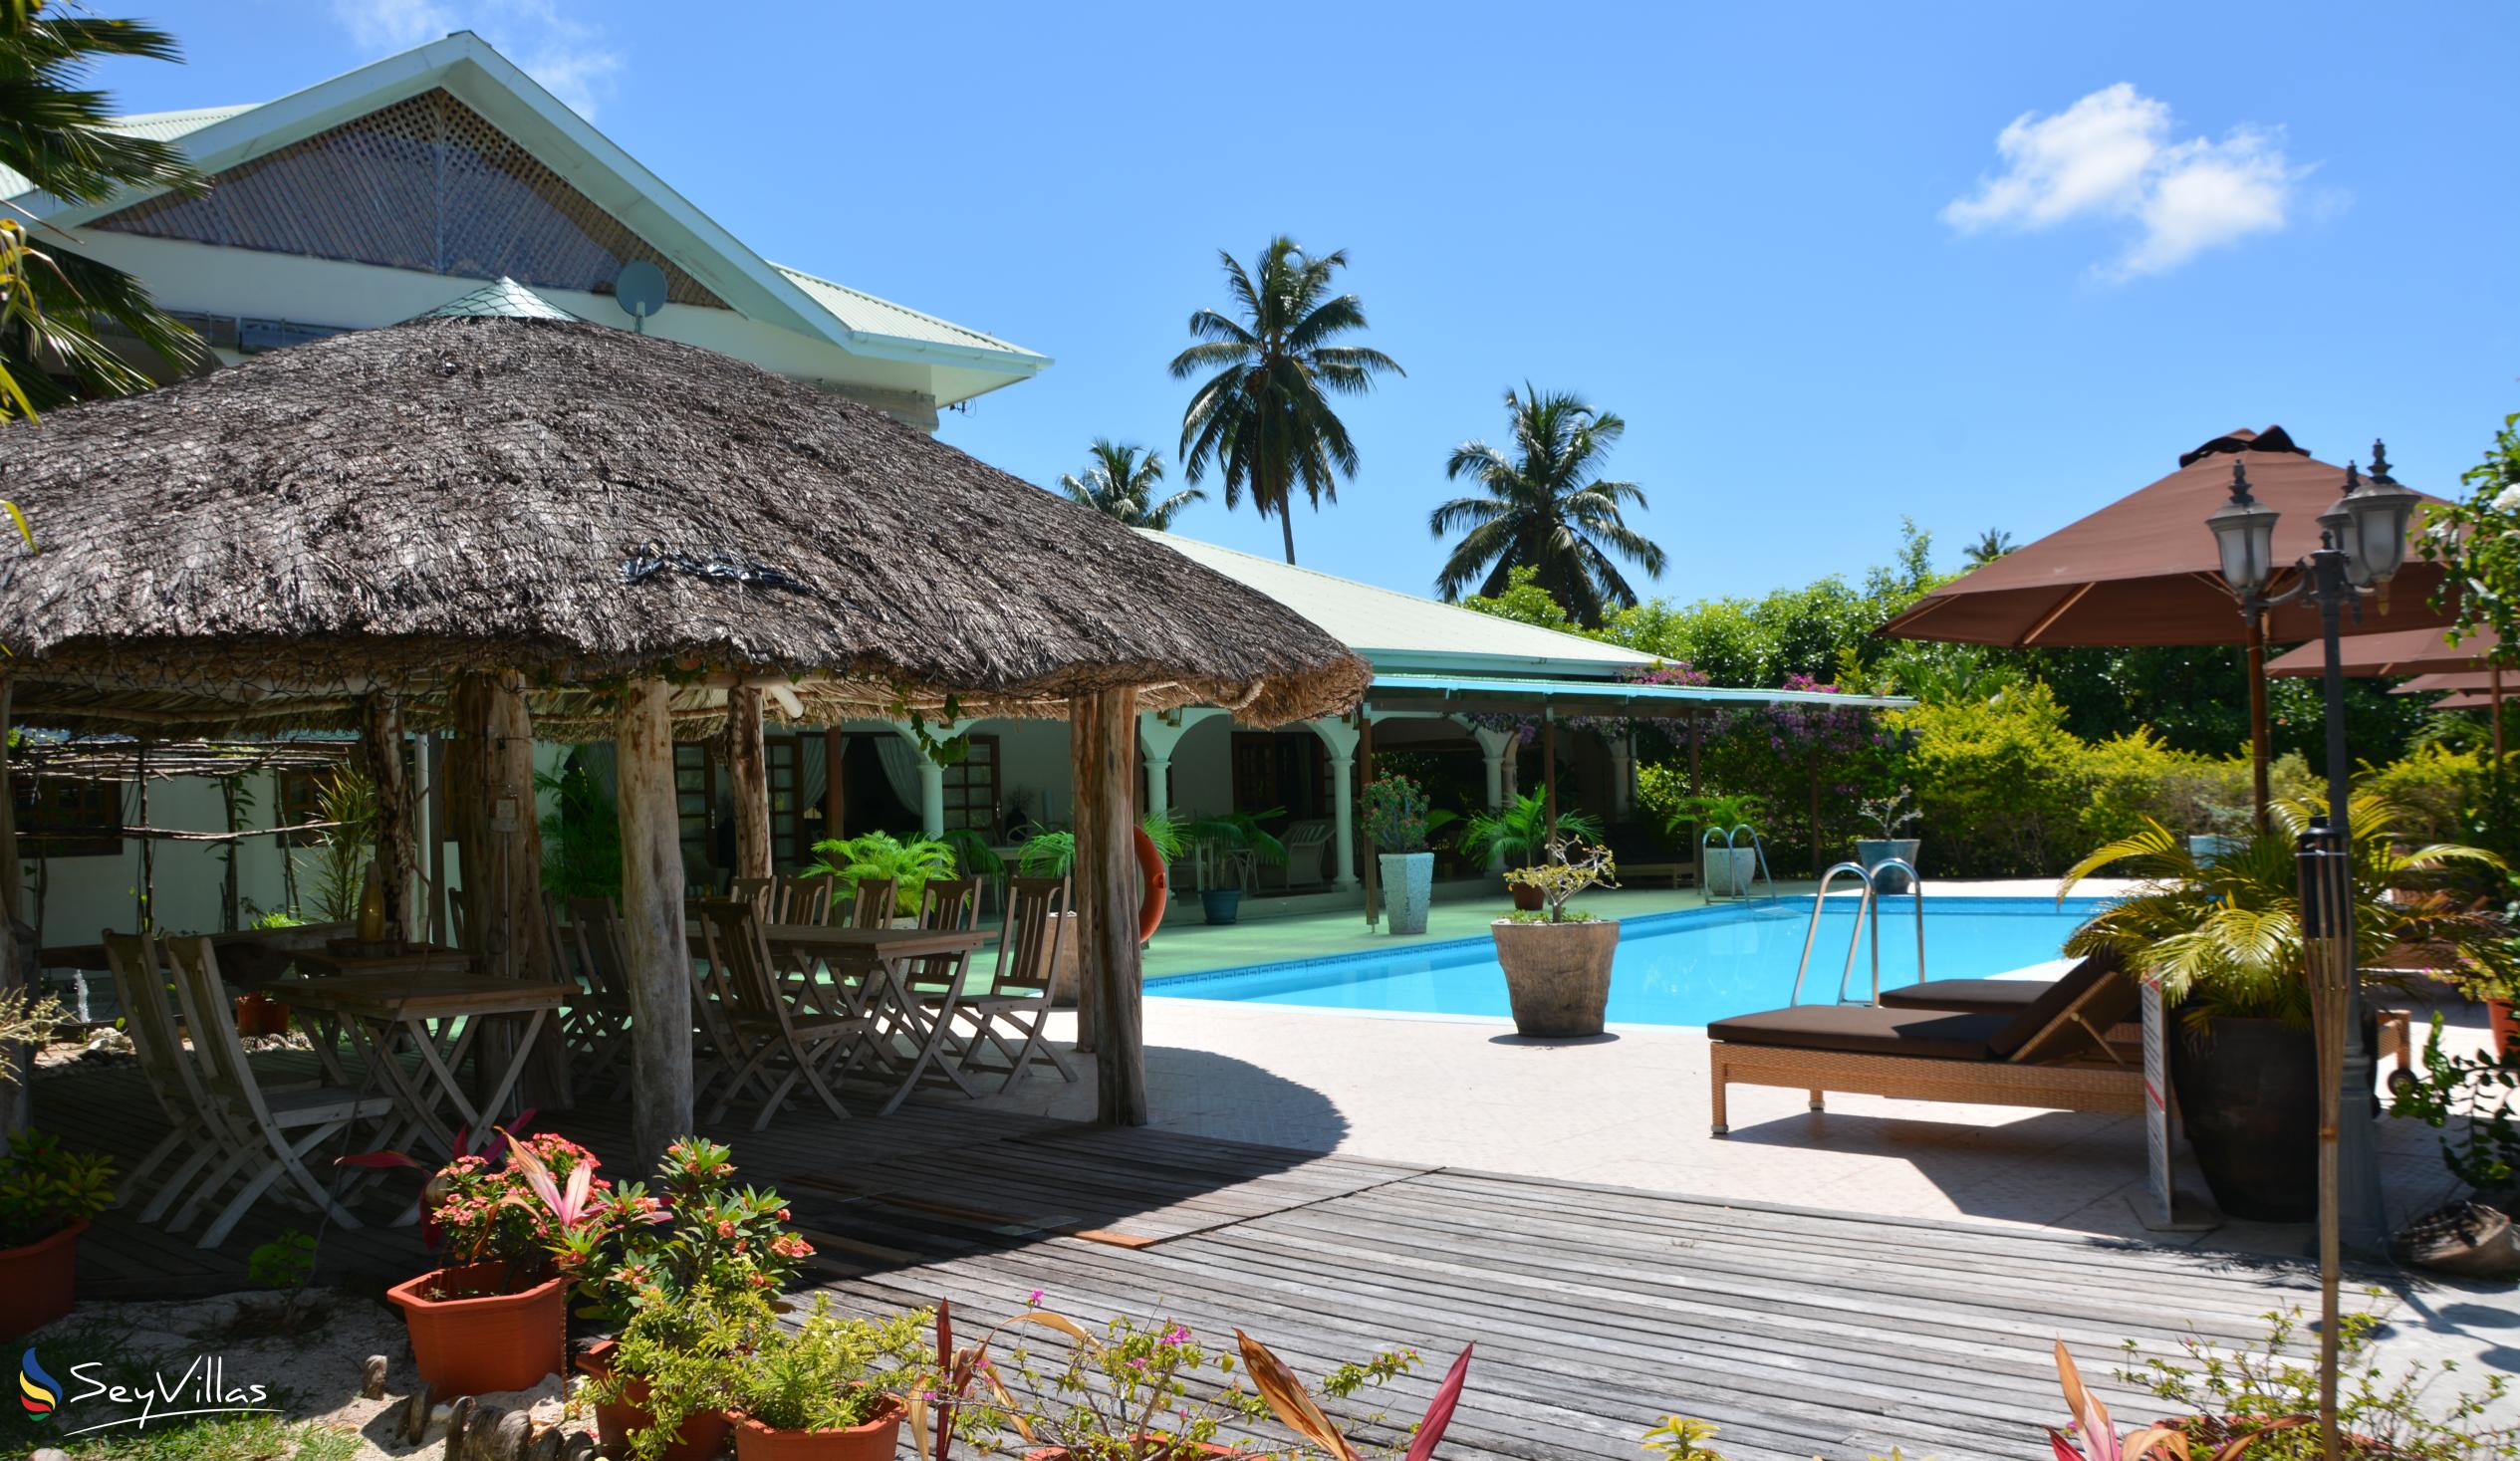 Foto 7: Villa de Cerf - Aussenbereich - Cerf Island (Seychellen)